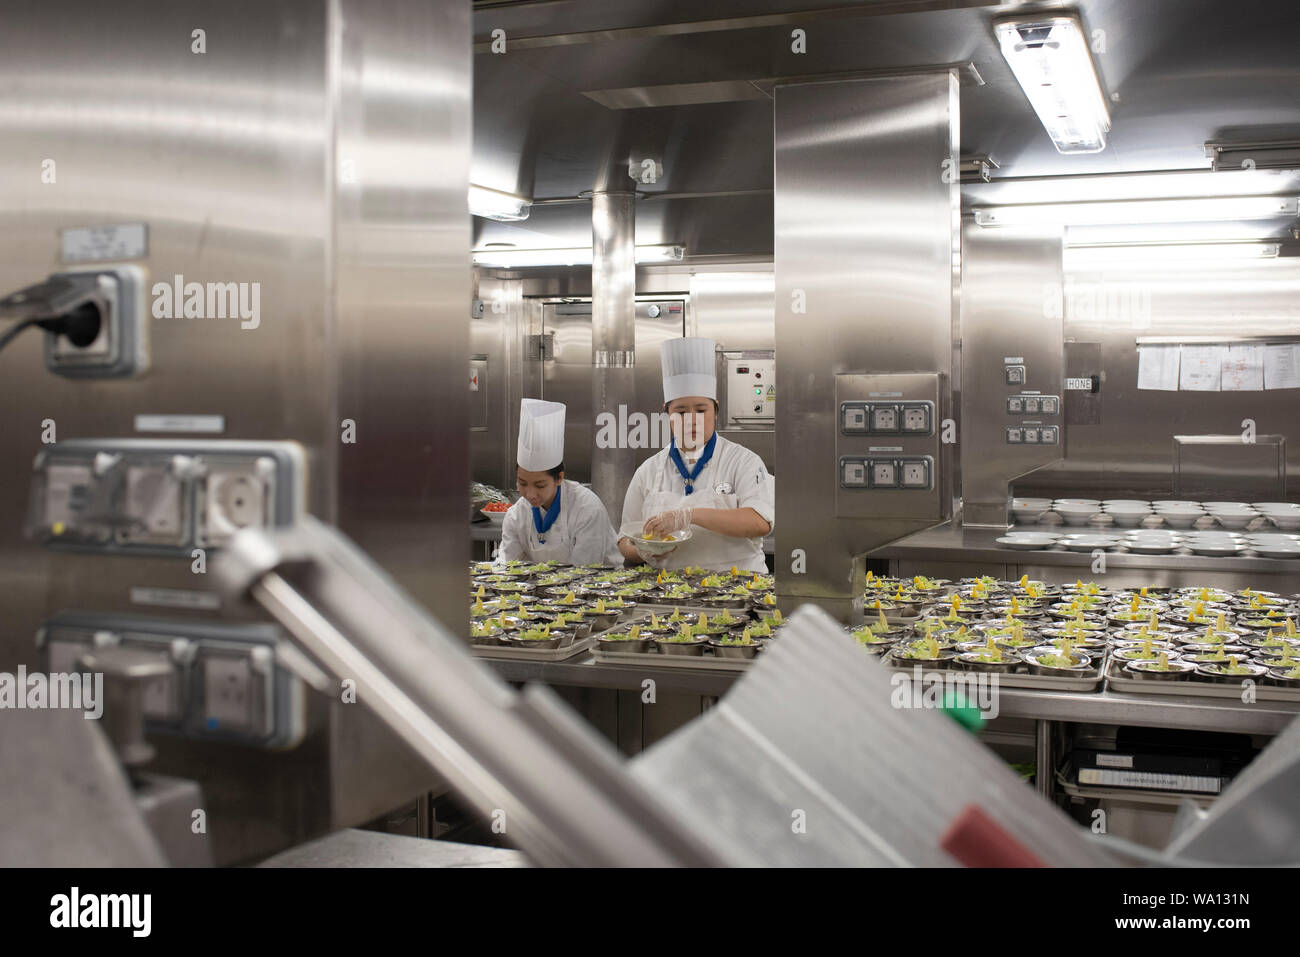 Près de 1000 personnes en cuisine travaillent à rythme onu effréné. Les antipasti, Les plats et les desserts sont préparés dans des endroits différents. Foto Stock